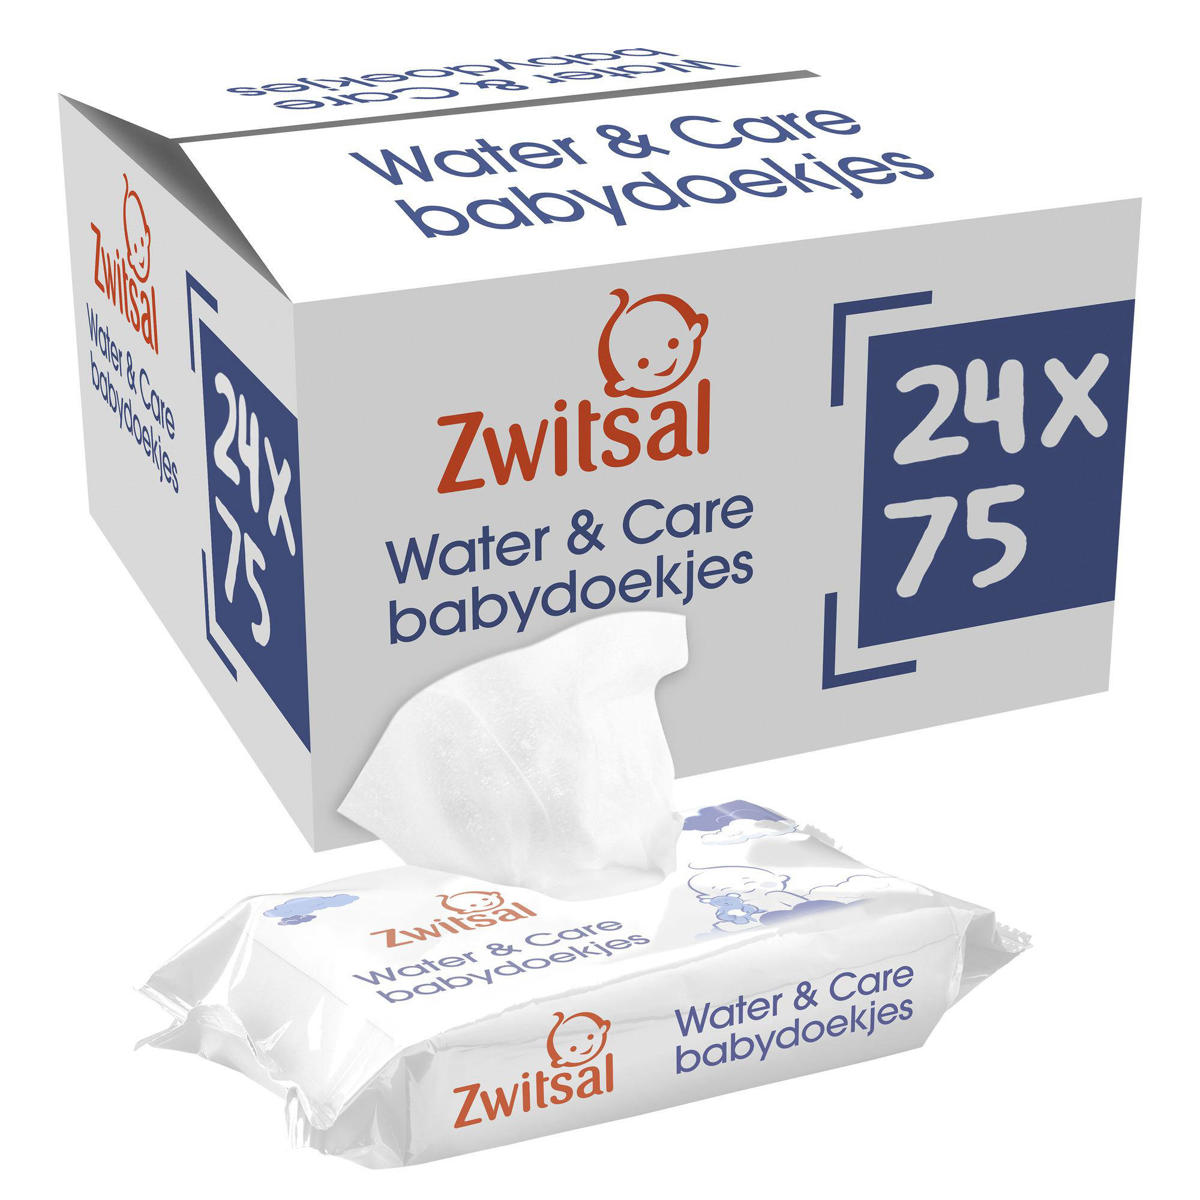 Moeras Productie Schuur Zwitsal Water & Care Billendoekjes - 24 x 75 stuks - voordeelverpakking |  wehkamp